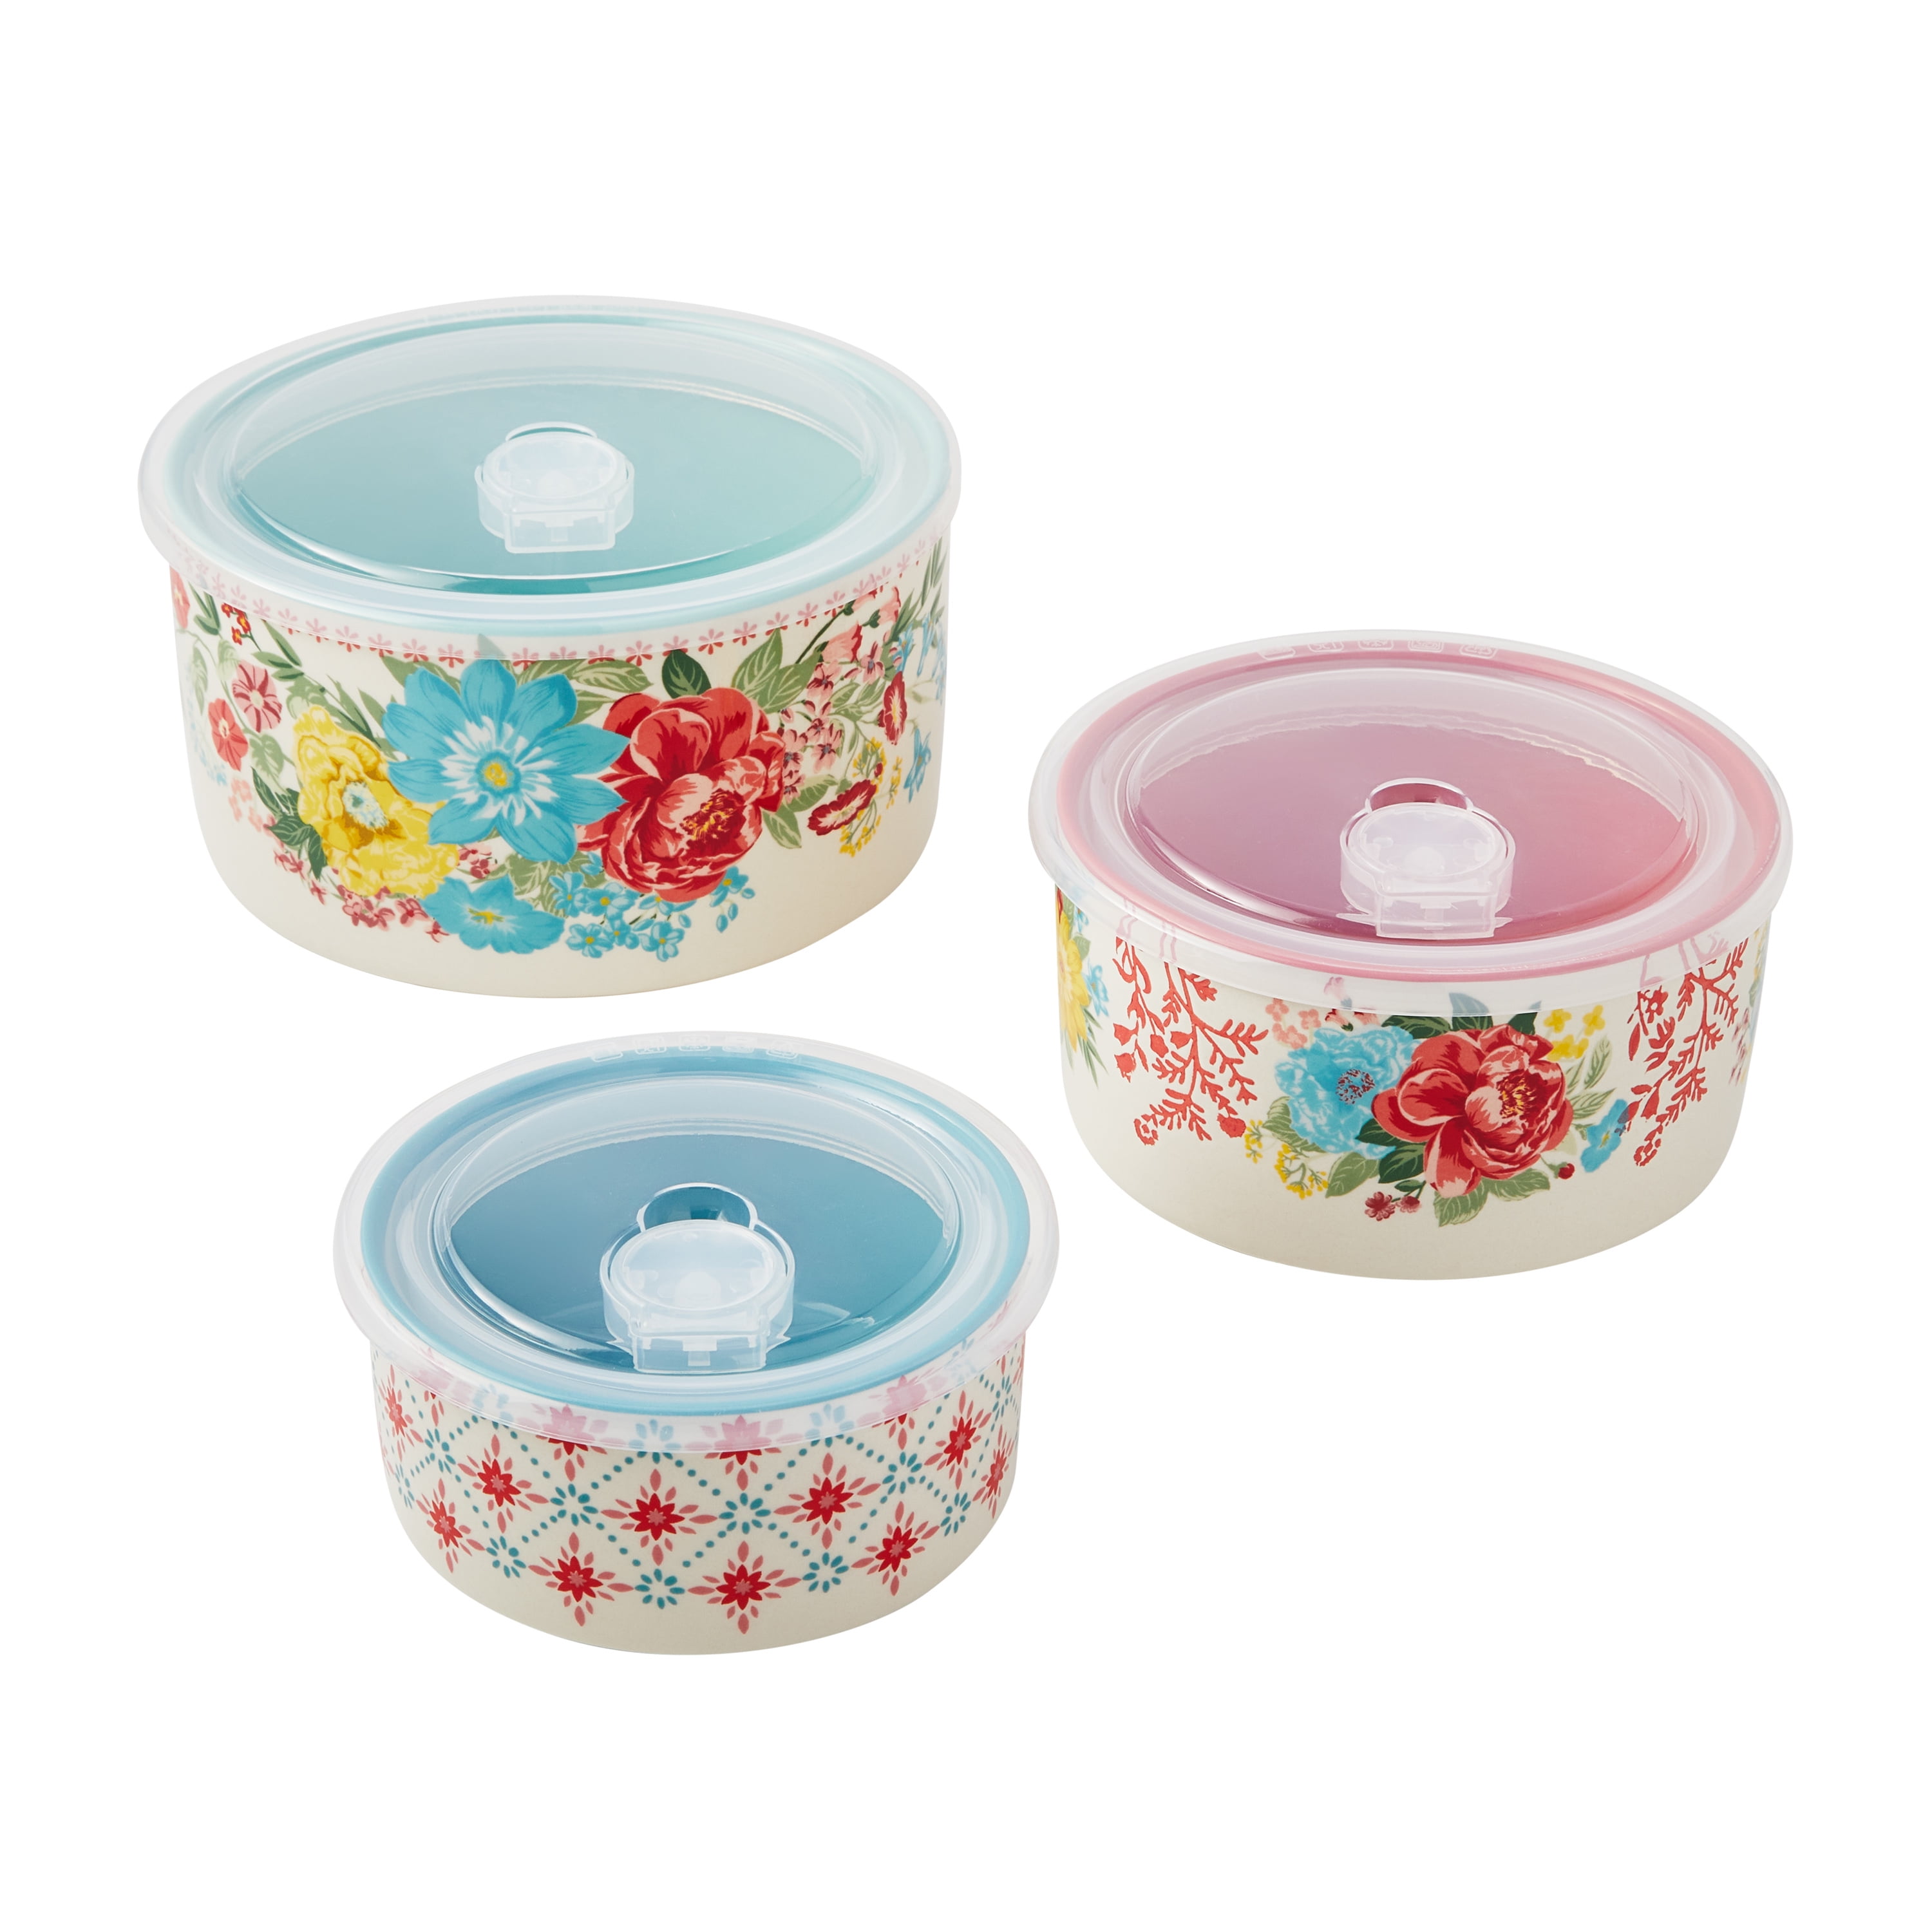 6-Piece Round Nesting Bakeware Set